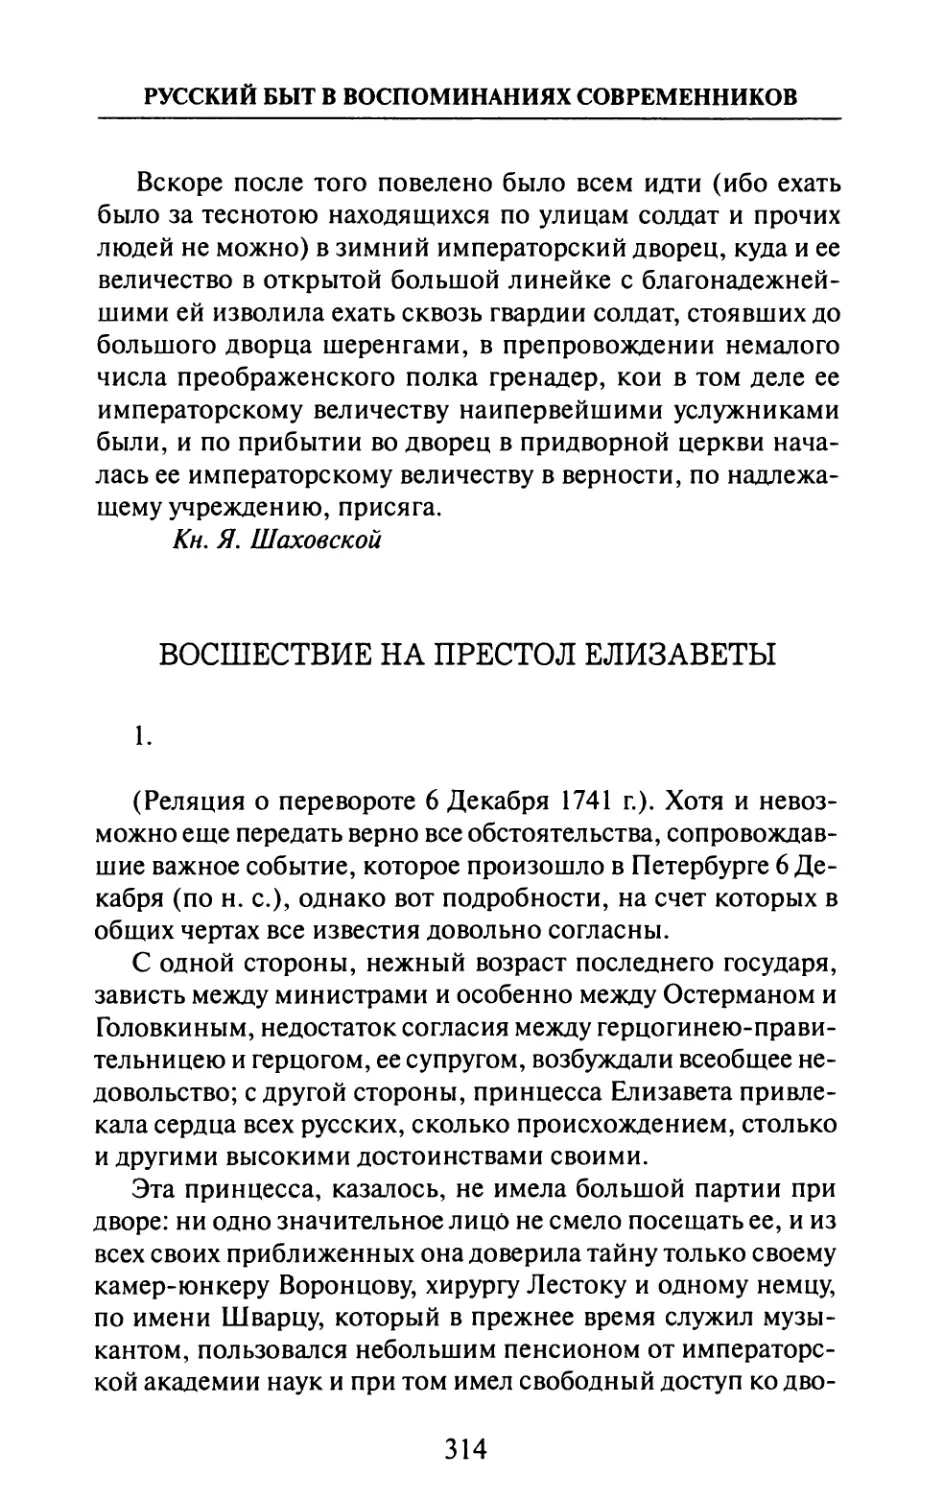 Восшествие  на  престол  Елизаветы —  1.  И.  де-ла-Шетарди.  «Маркиз  И.  де-ла-Шетарди в  России  в  1740—1742  гг.»